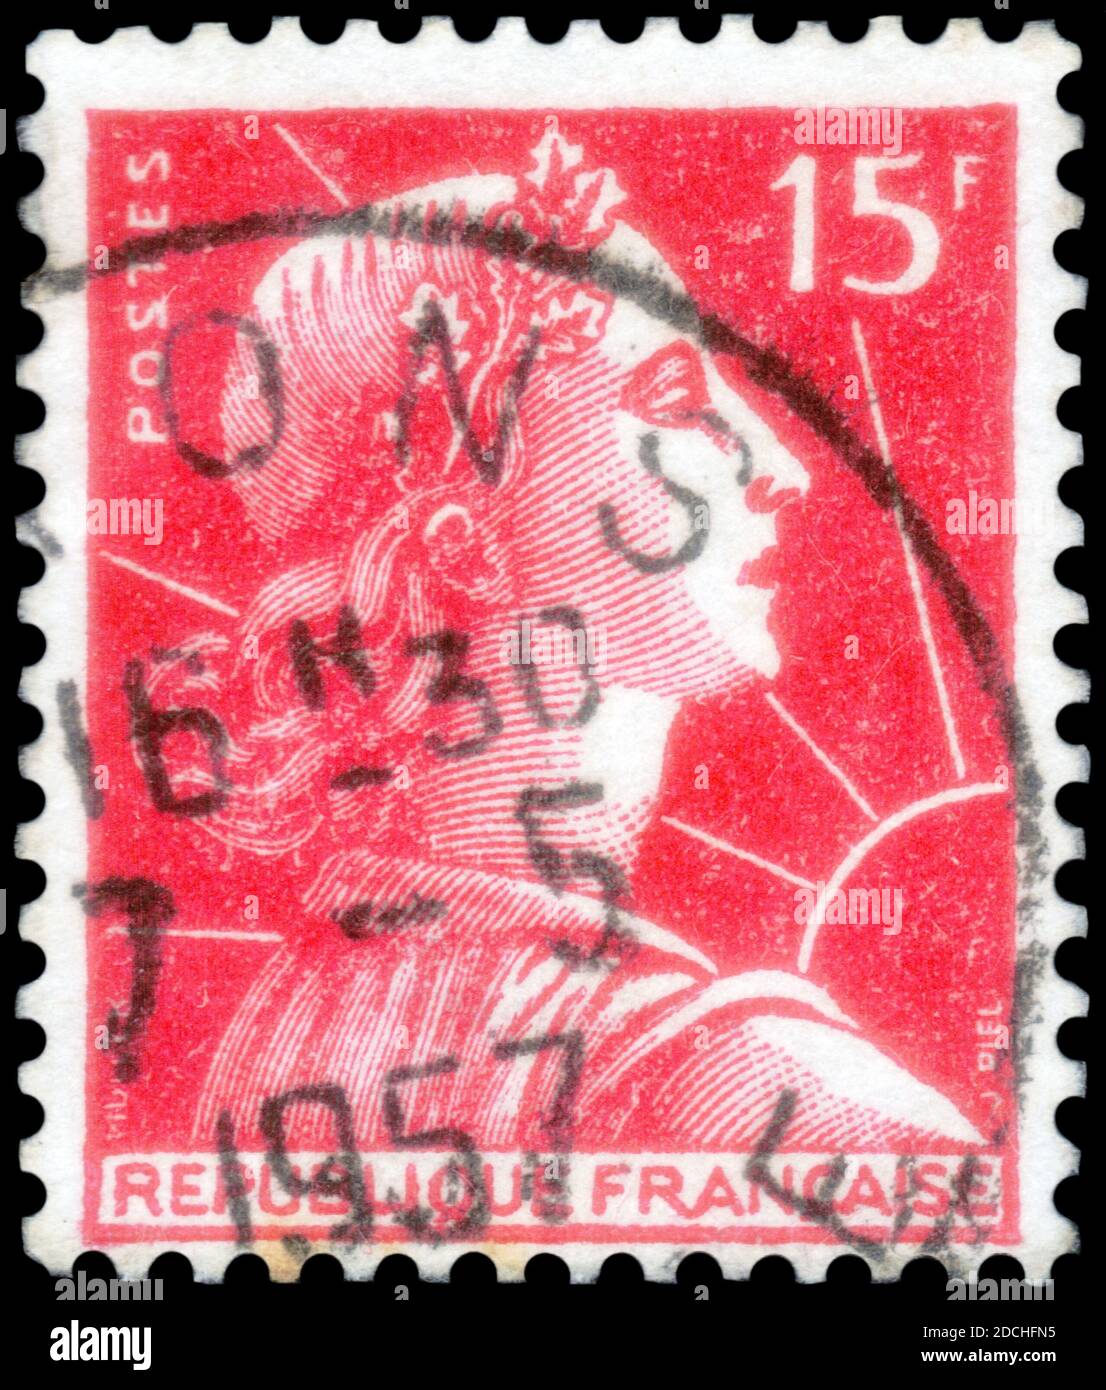 Saint-Pétersbourg, Russie - 27 septembre 2020 : timbre imprimé en France avec l'image de la Marianne de Muller, vers 1955 Banque D'Images